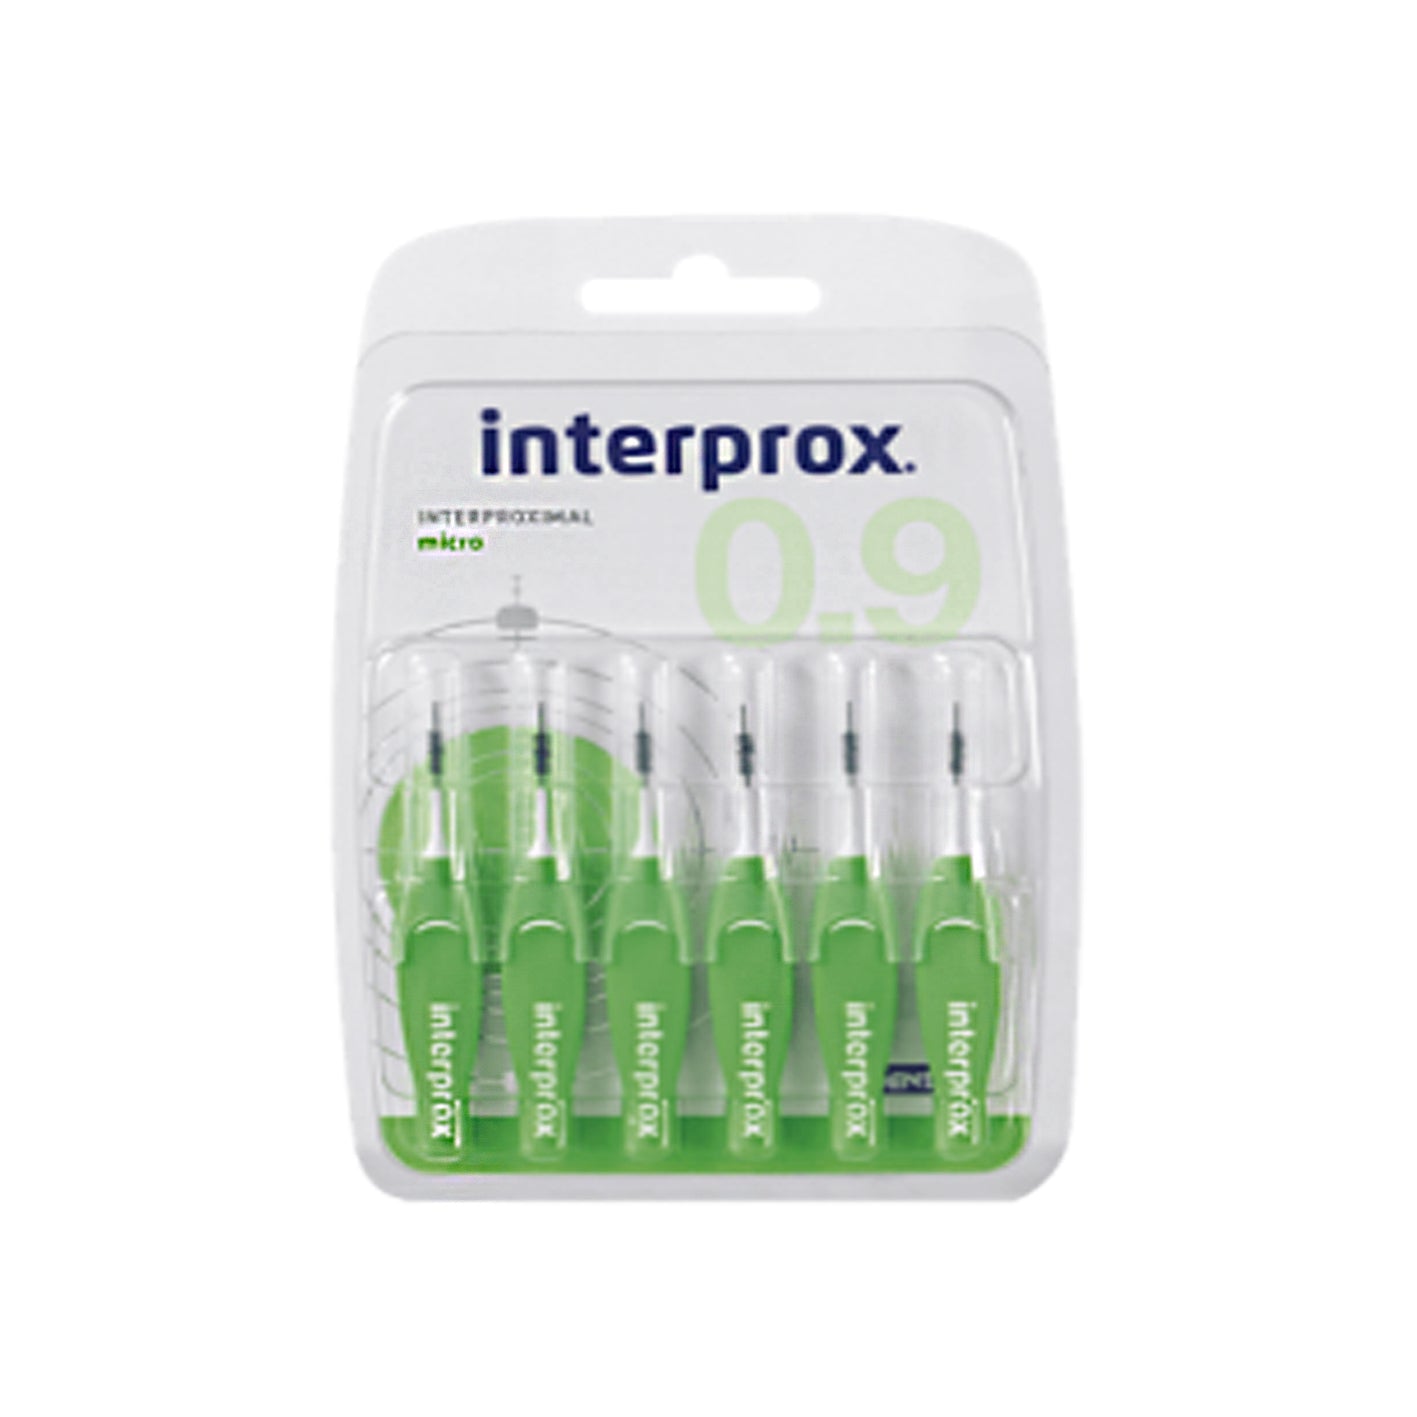 Interprox Cepillo Micro 0.9